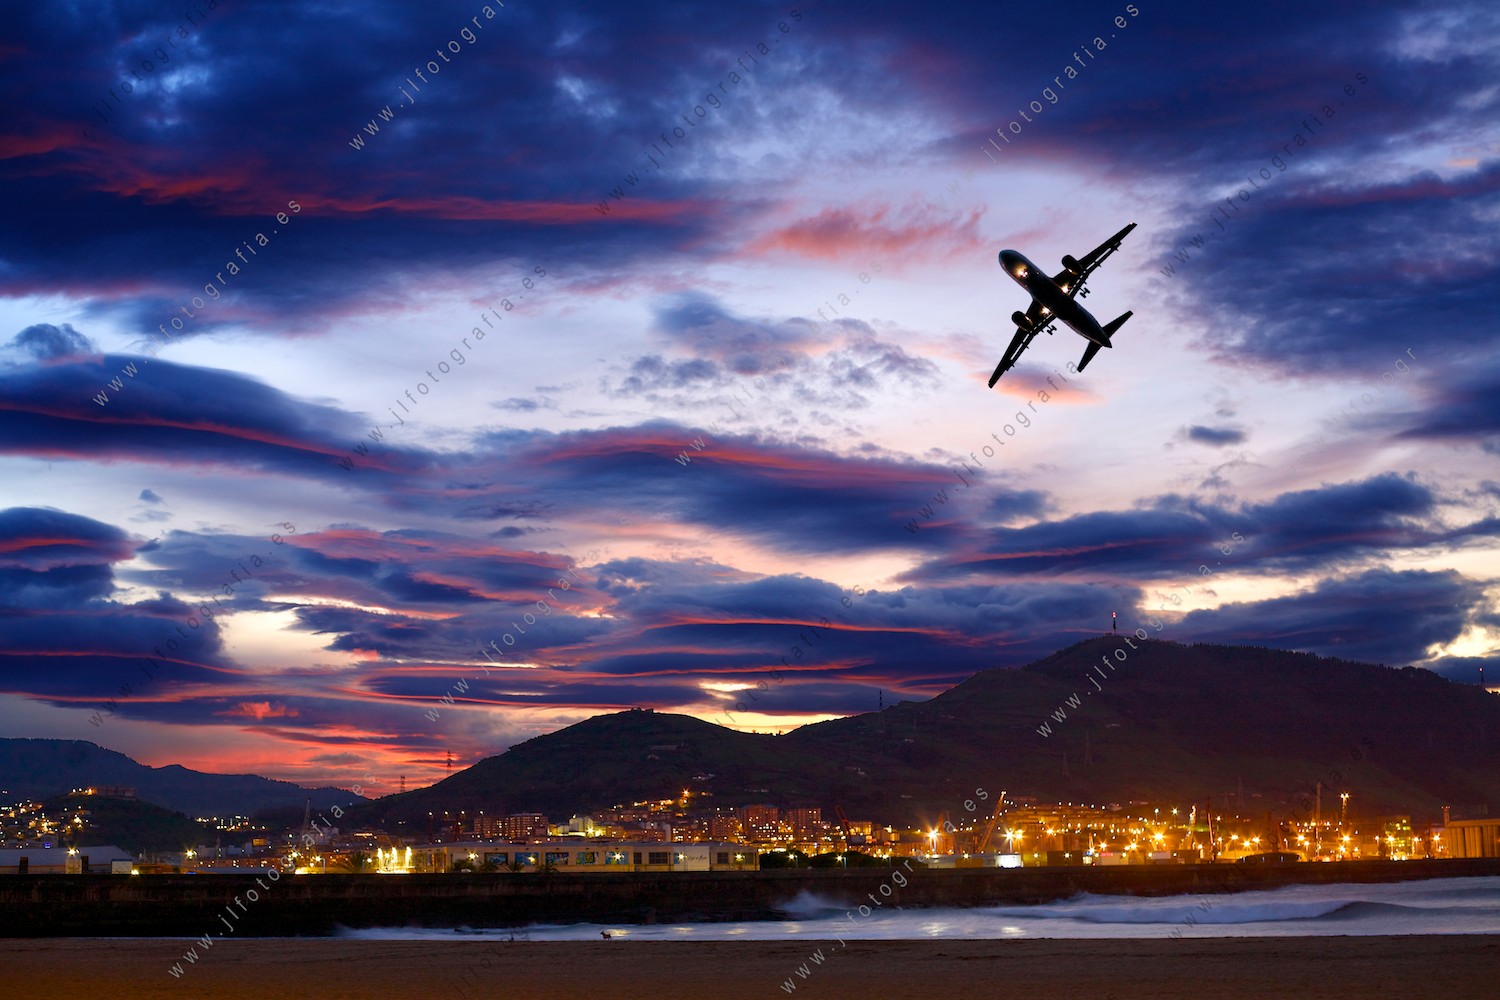 Ocaso desde el paseo de Algorta, con Santurtzi al fondo y un avión virando en el cielo.